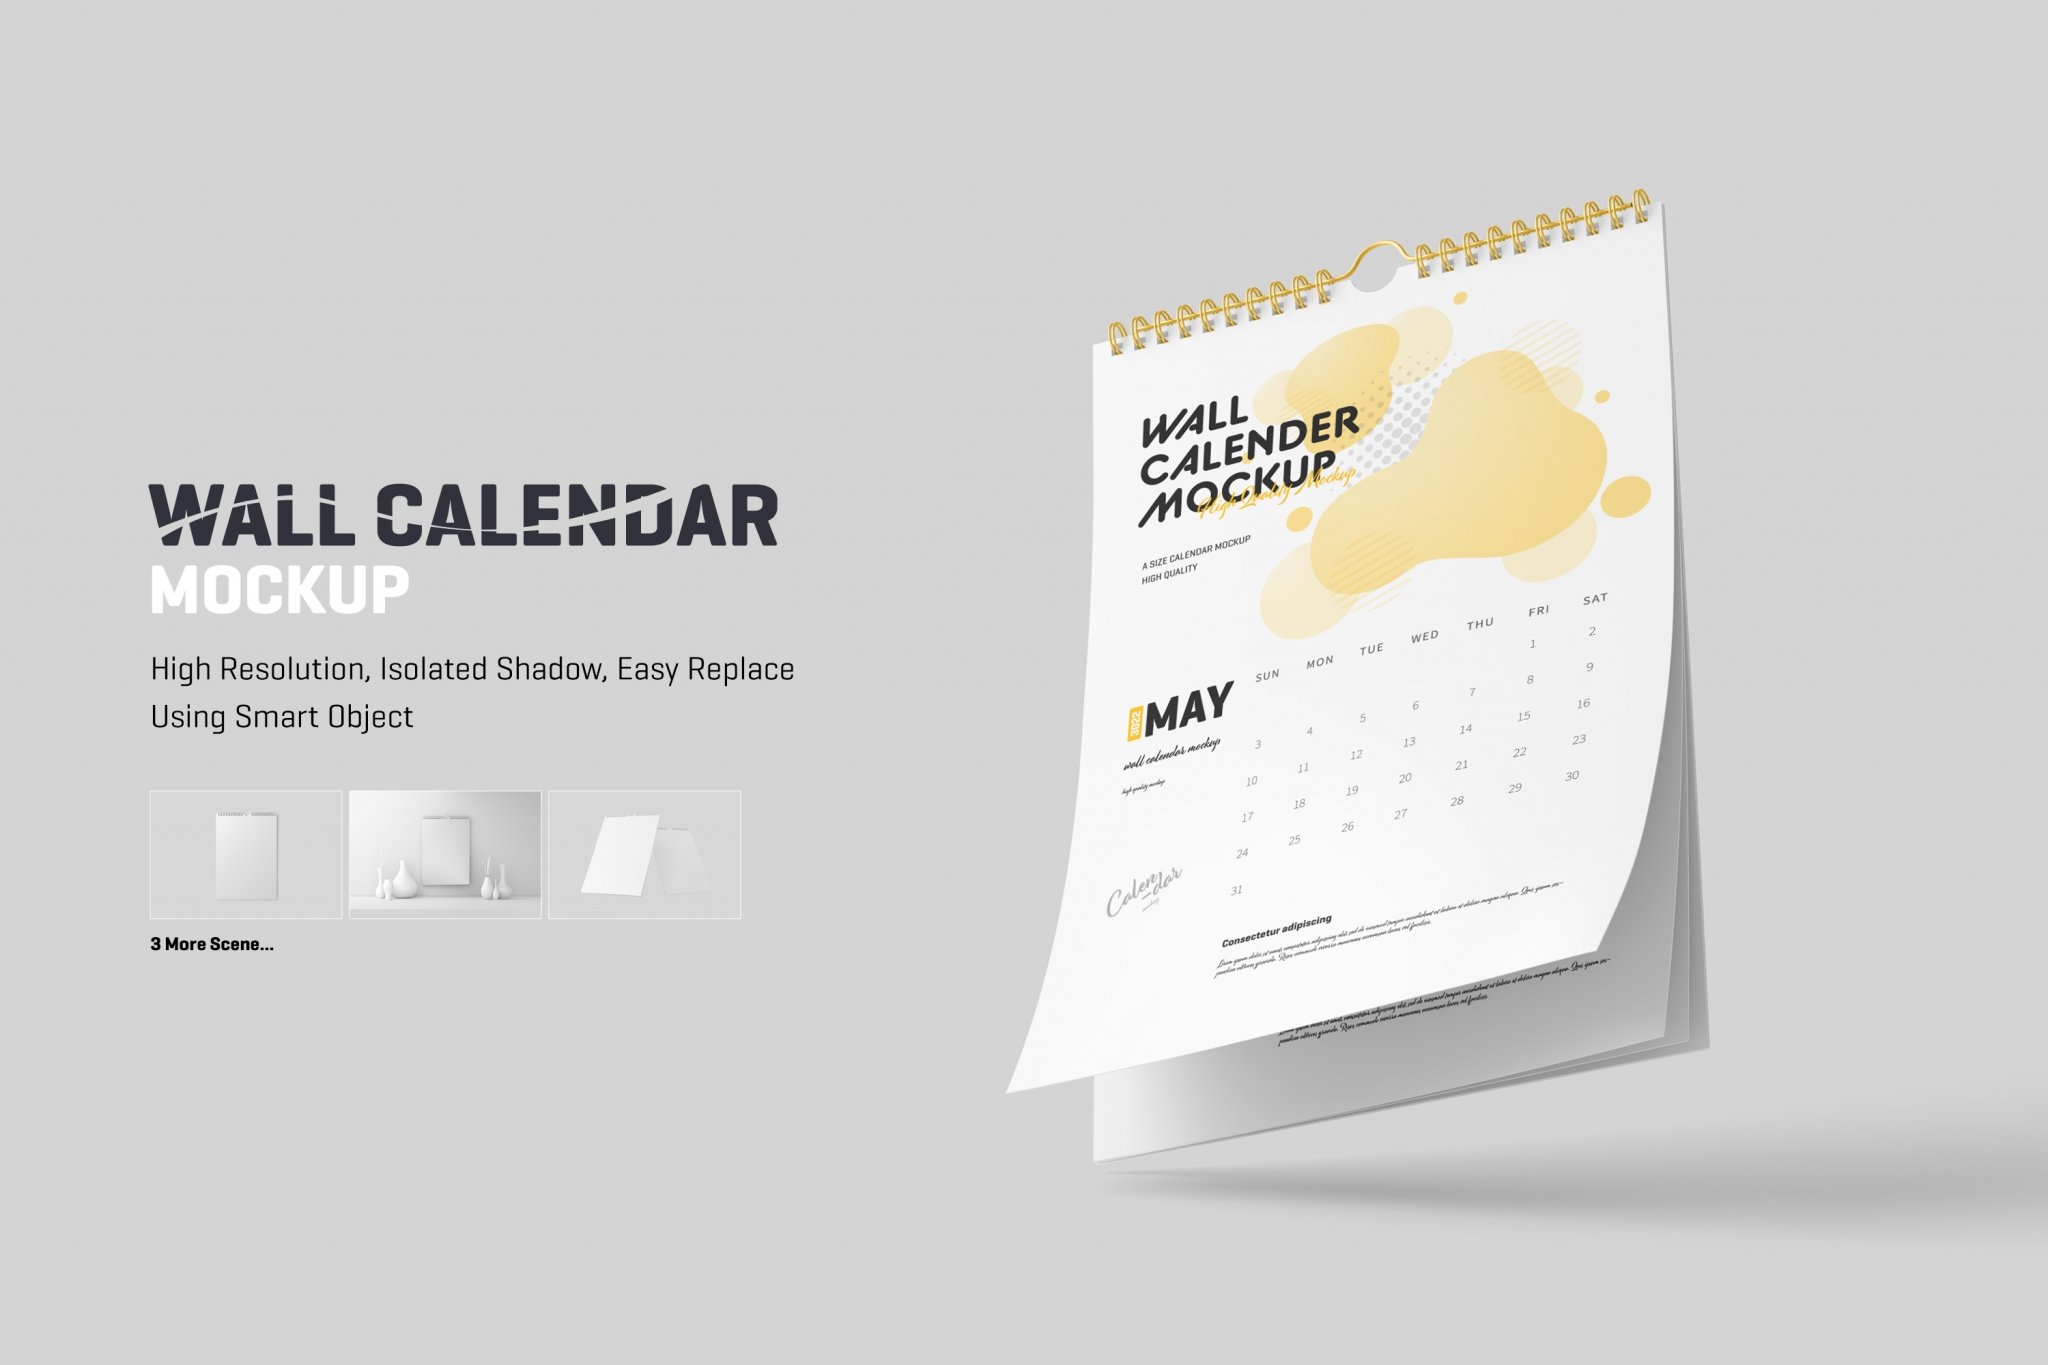 Wall Calendar Mockup Design Cuts